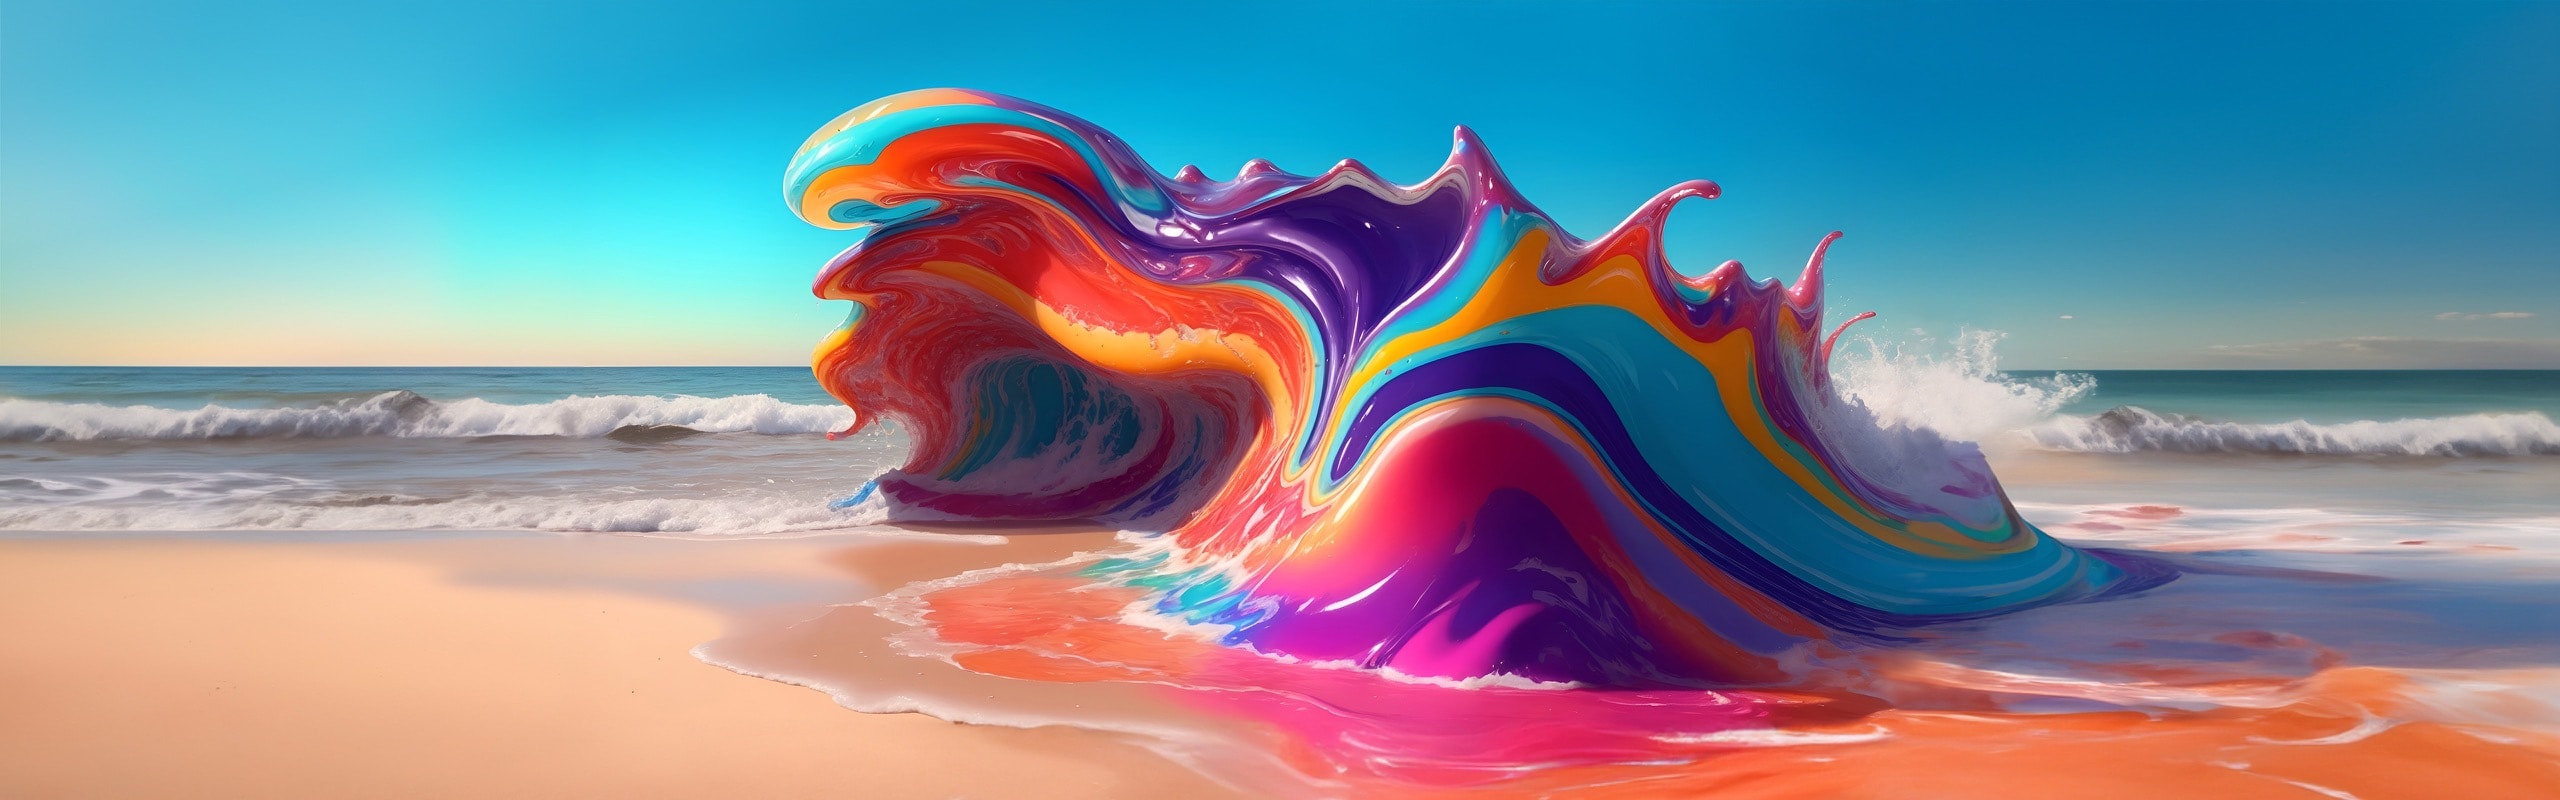 Красочная трехмерная модель в форме огромной разноцветной волны.